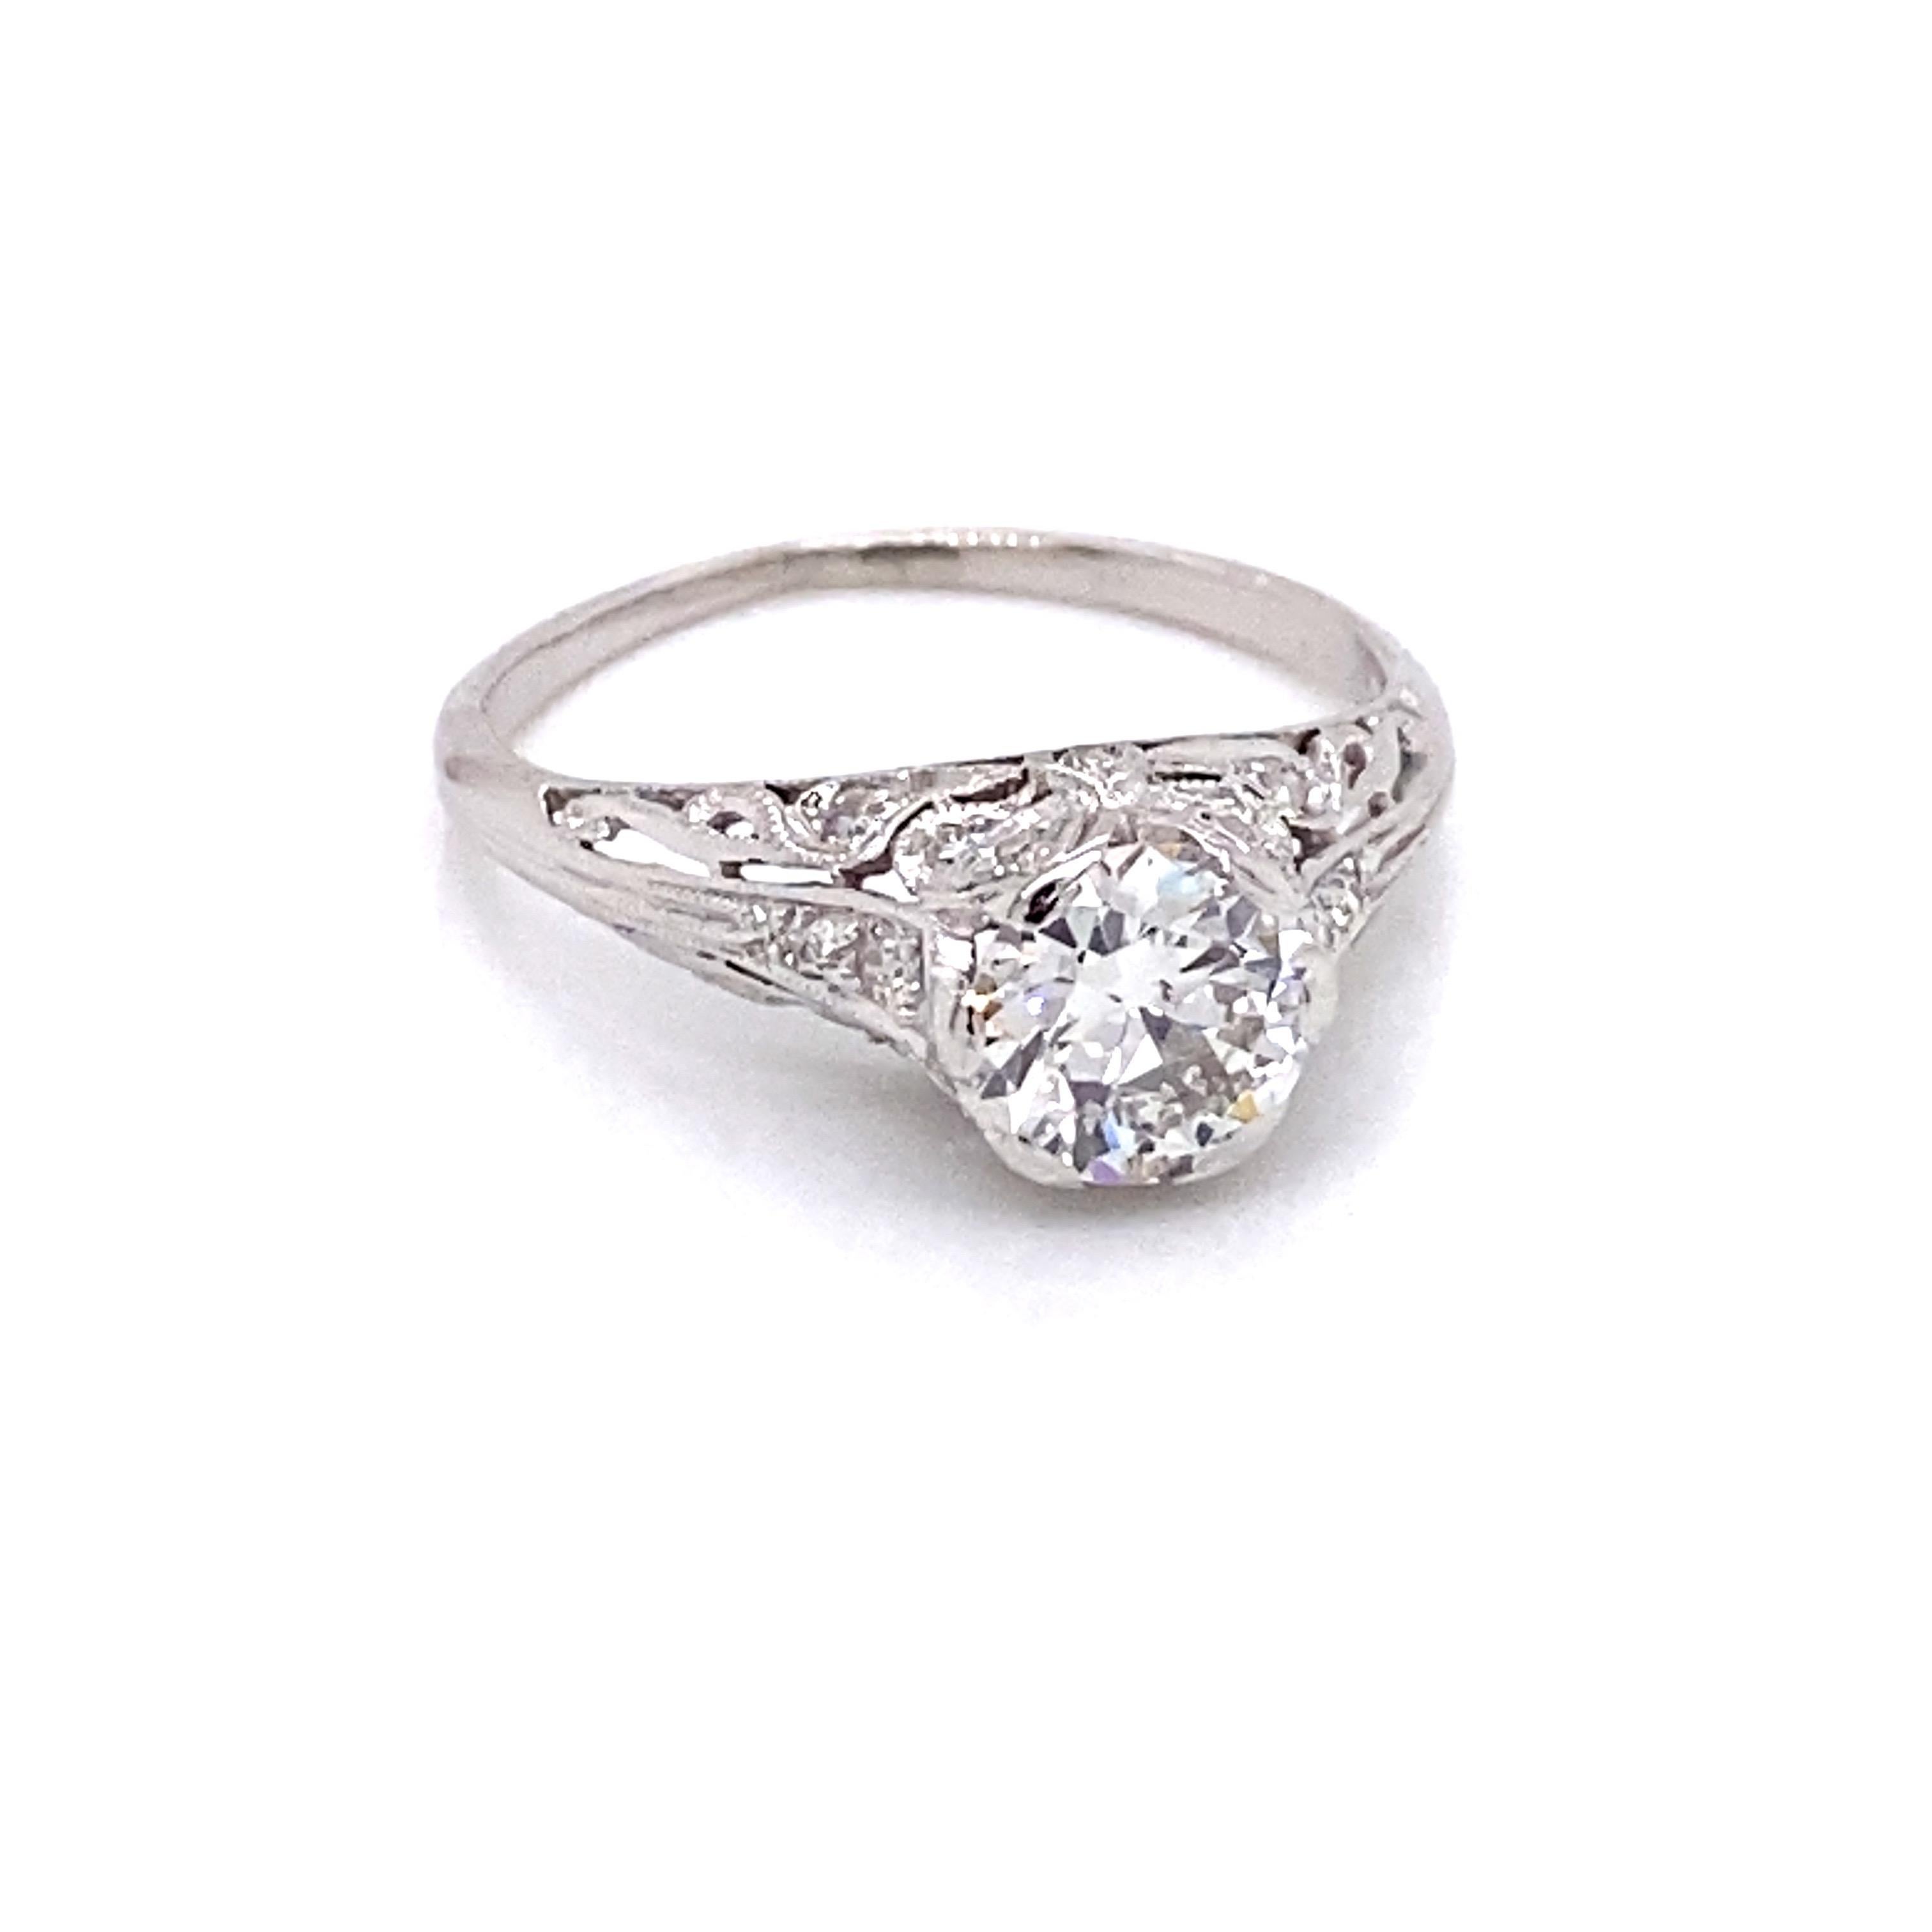 Vintage Platin Art Deco Diamant Verlobungsring Filigran - Die Mitte europäischen Diamanten geschnitten wiegt etwa 1,31ct und hat die Qualität der M Farbe und VS2 Klarheit. Der Diamant sitzt hoch in einer filigranen Platinfassung im frühen